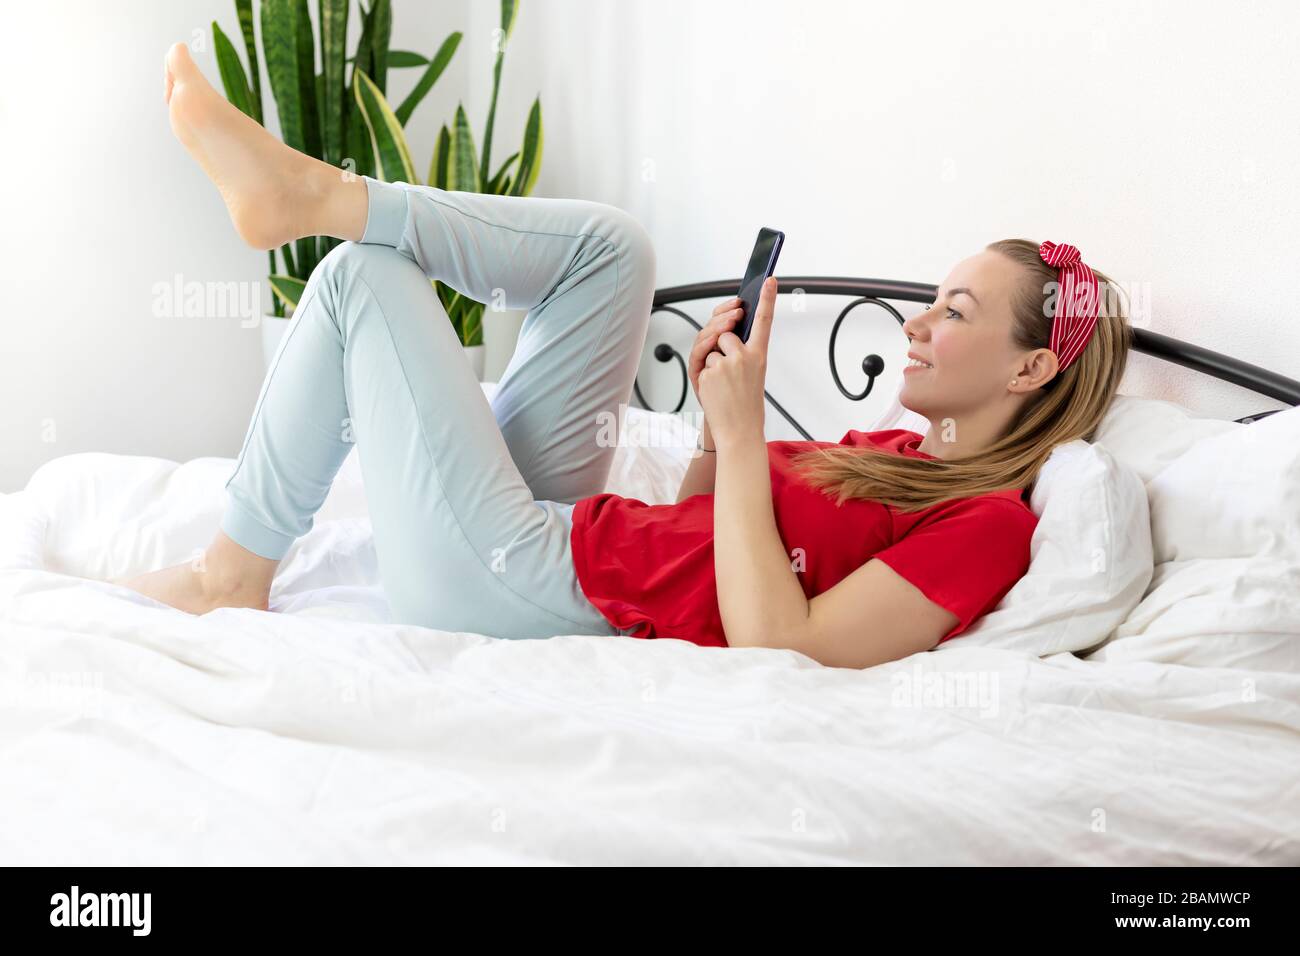 Junge lächelnde Frau mit blonden Haaren in einem roten T-Shirt und bequemen Hosen liegt auf einem weißen Bett mit Smartphone, sie arbeitet, studiert von zu Hause, schreibt A. Stockfoto